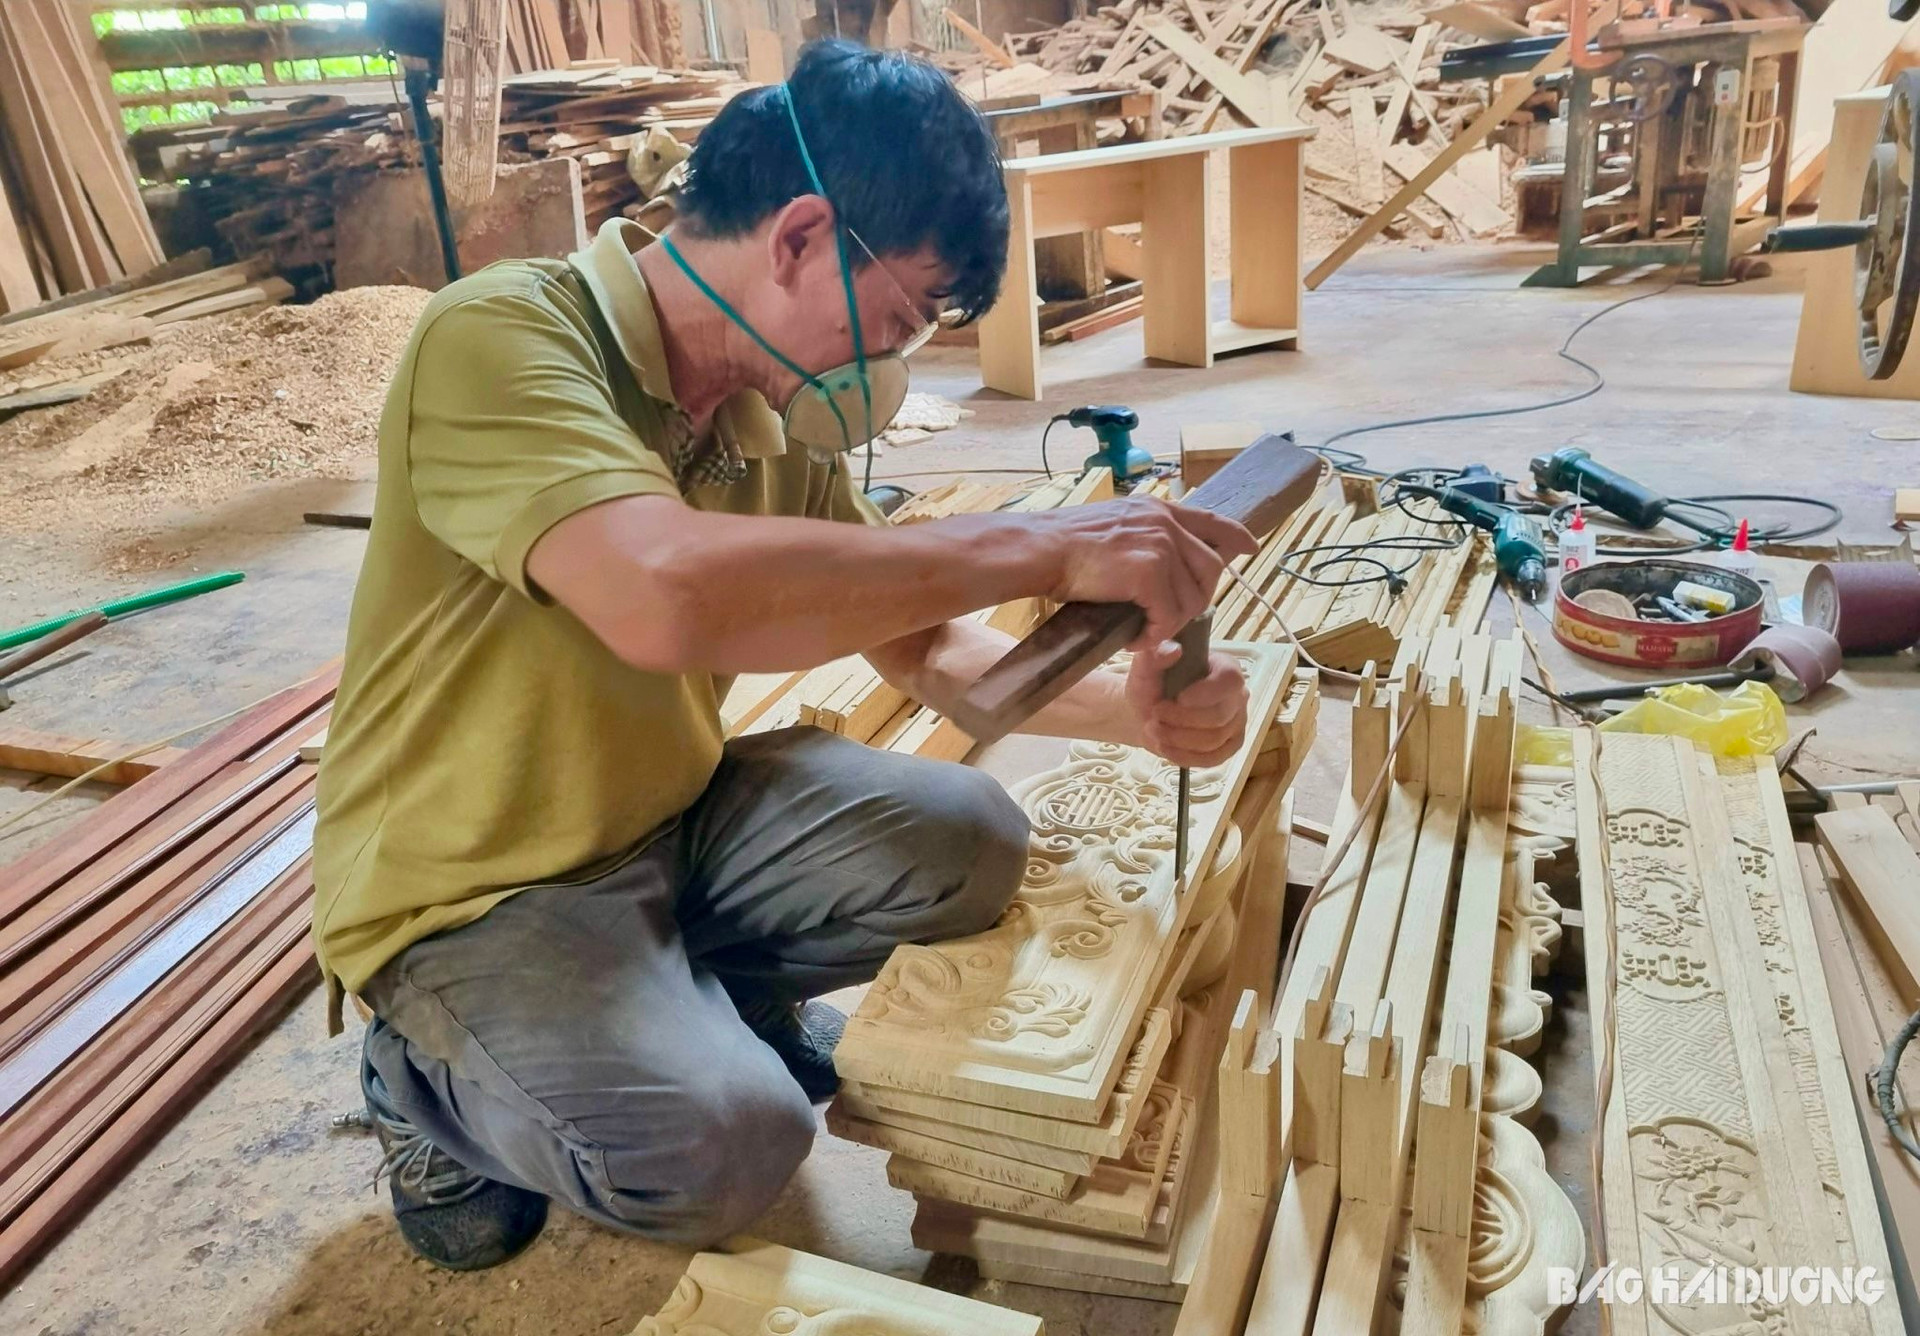 Một hợp tác xã ở Hải Dương, chỉ làm đồ gỗ mà doanh thu 40 tỷ, vừa nhận danh hiệu ngôi sao- Ảnh 1.